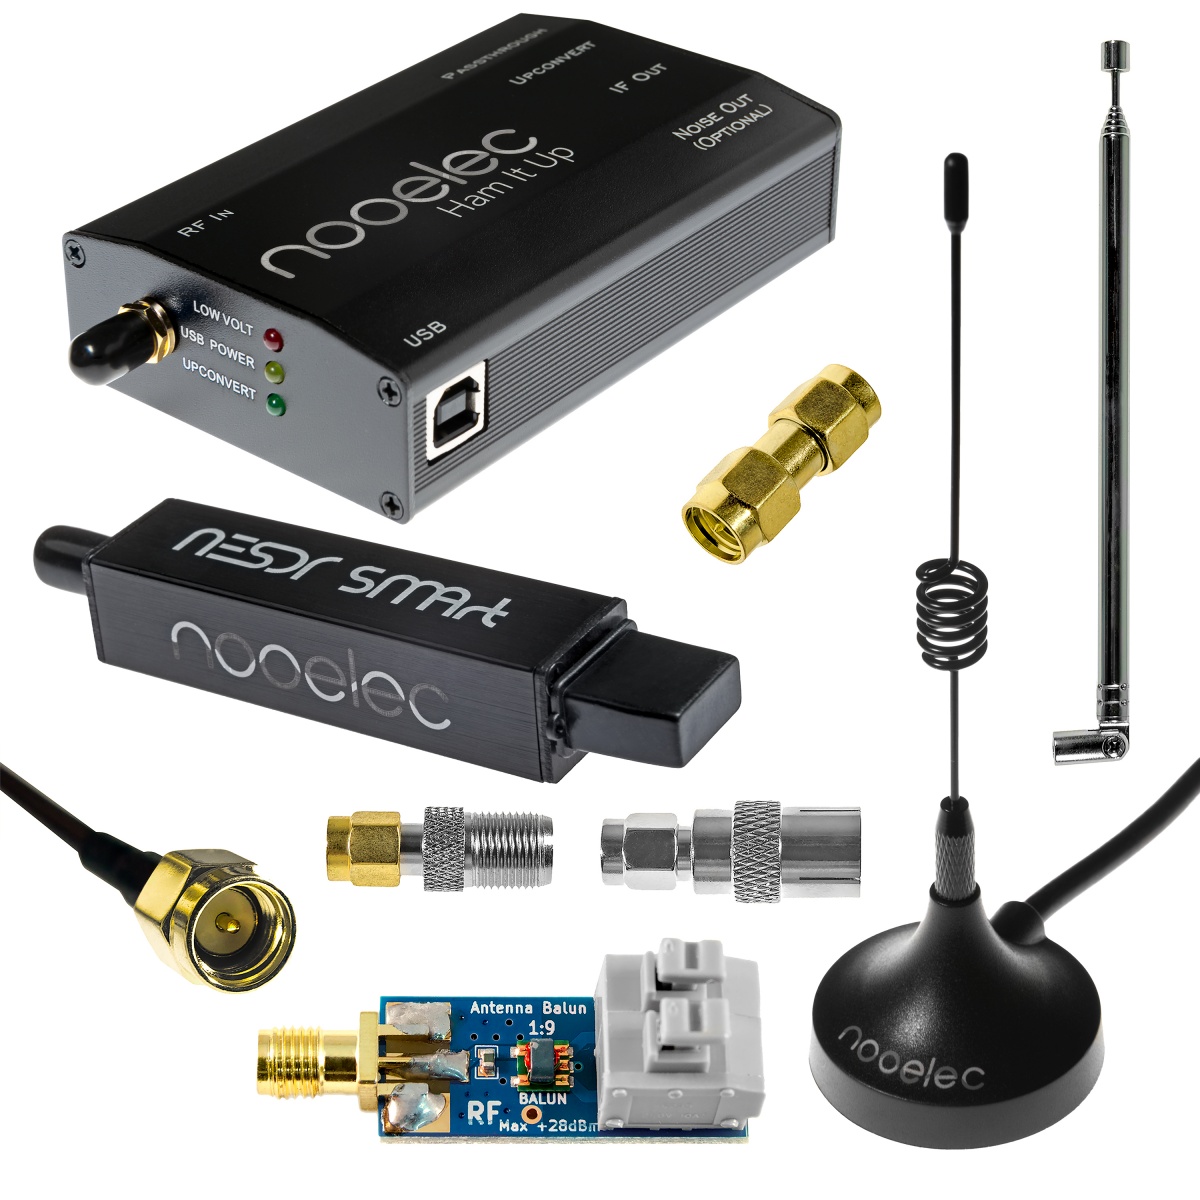 Nooelec - Nooelec NESDR SMArt HF Bundle:  Software Defined  Radio Set for HF/UHF/VHF including RTL-SDR, Assembled Ham It Up  Upconverter, Balun, Adapters